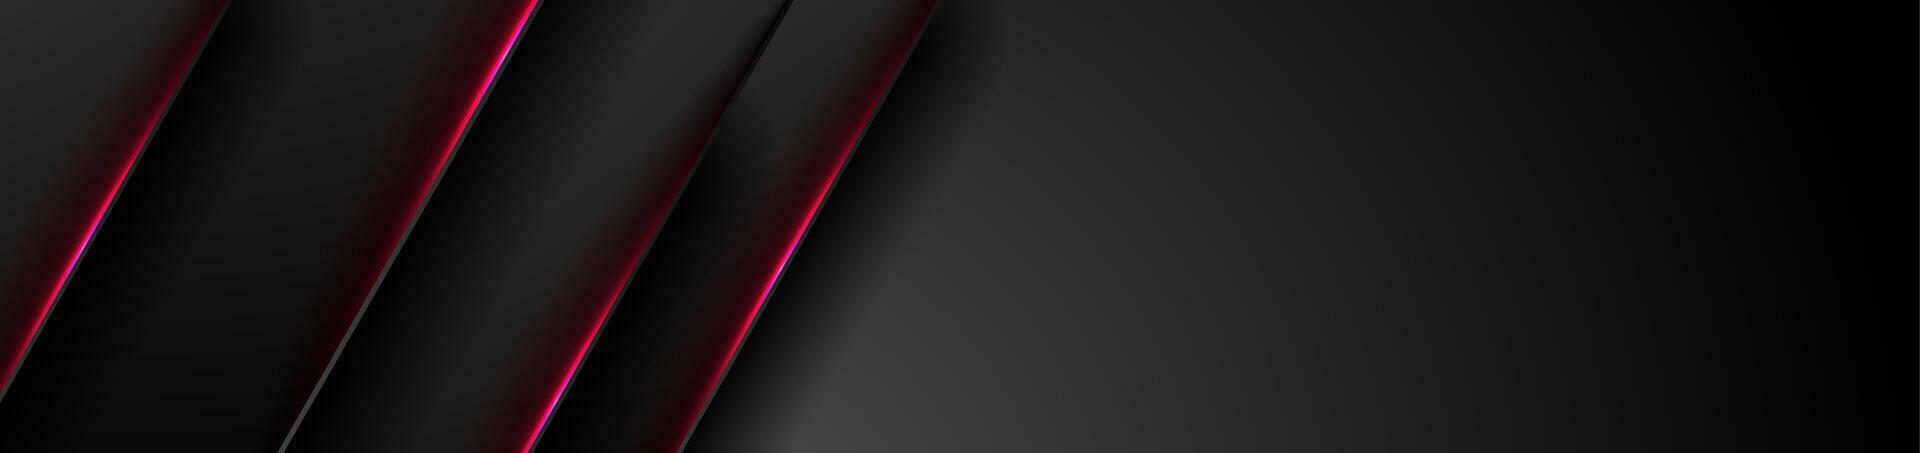 zwart tech abstract banier met rood neon laser lijnen vector